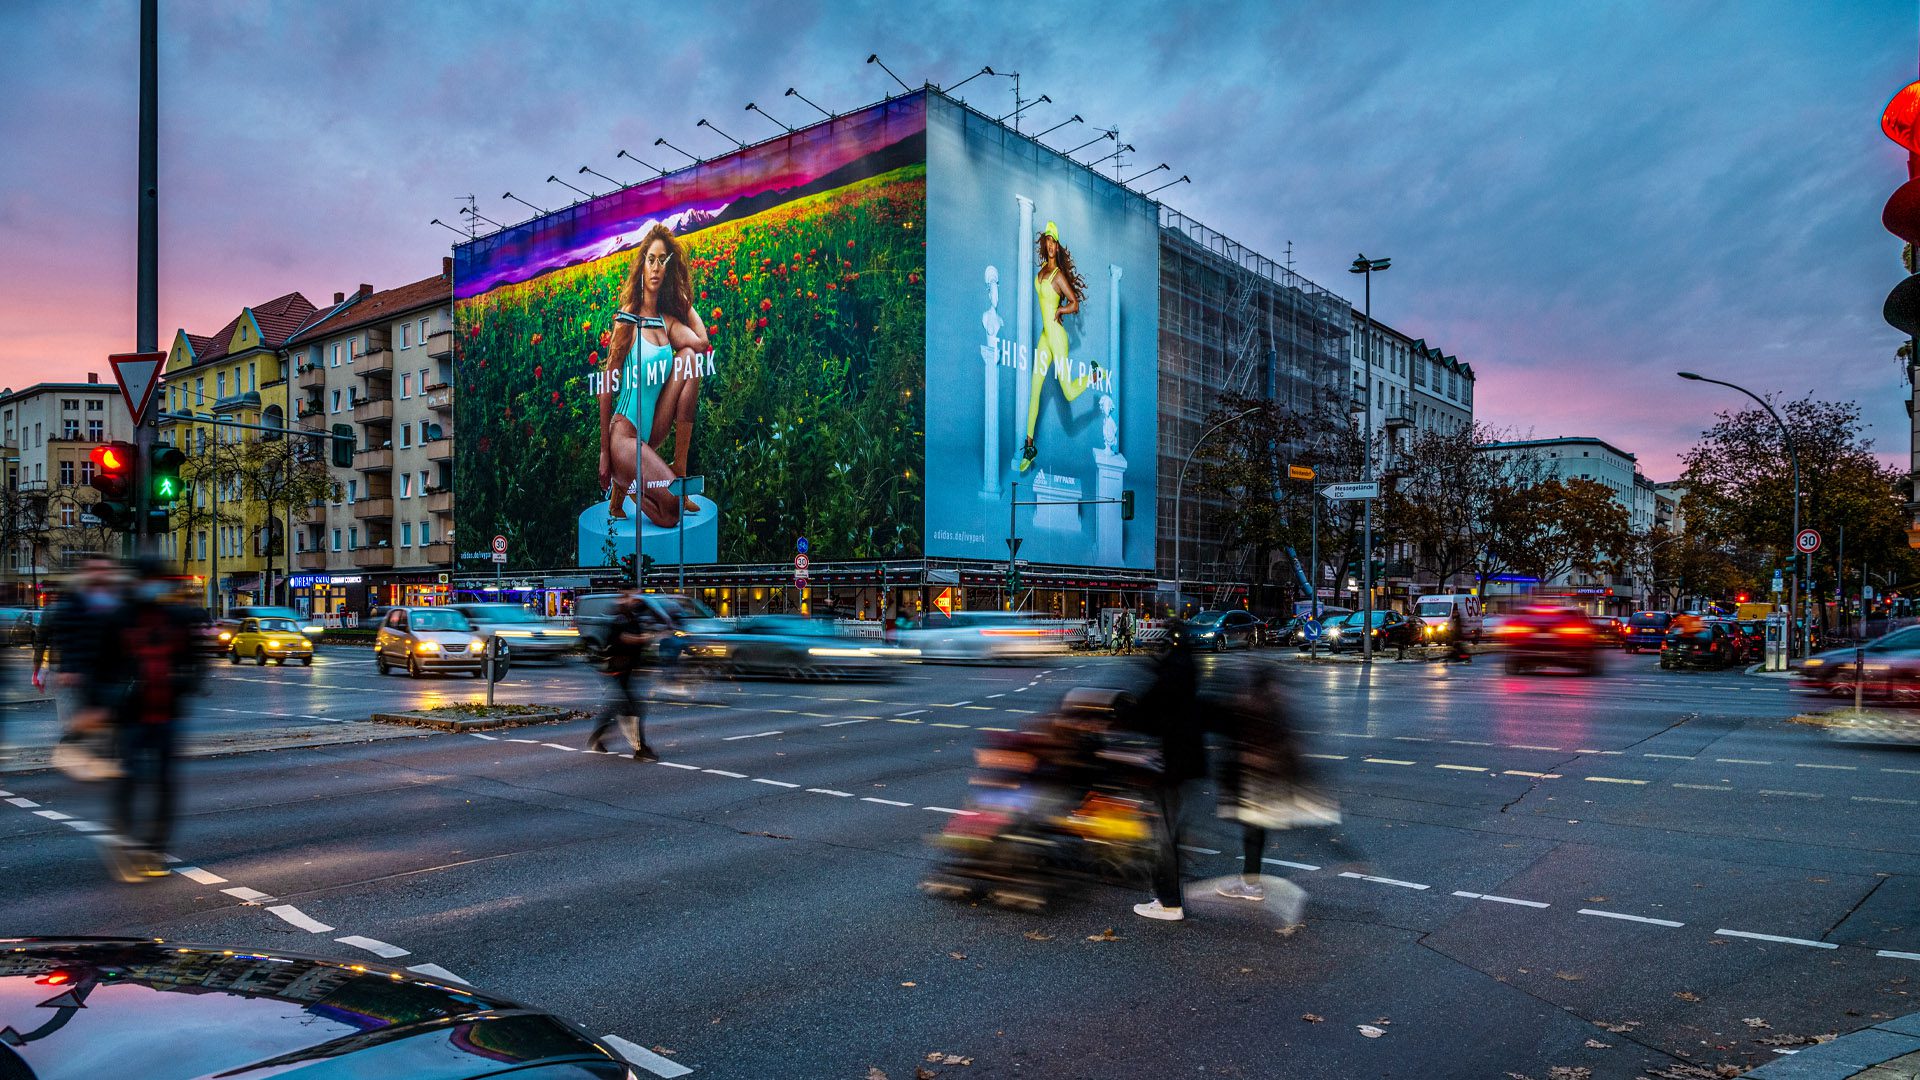 Riesenposter von Adidas in Berlin